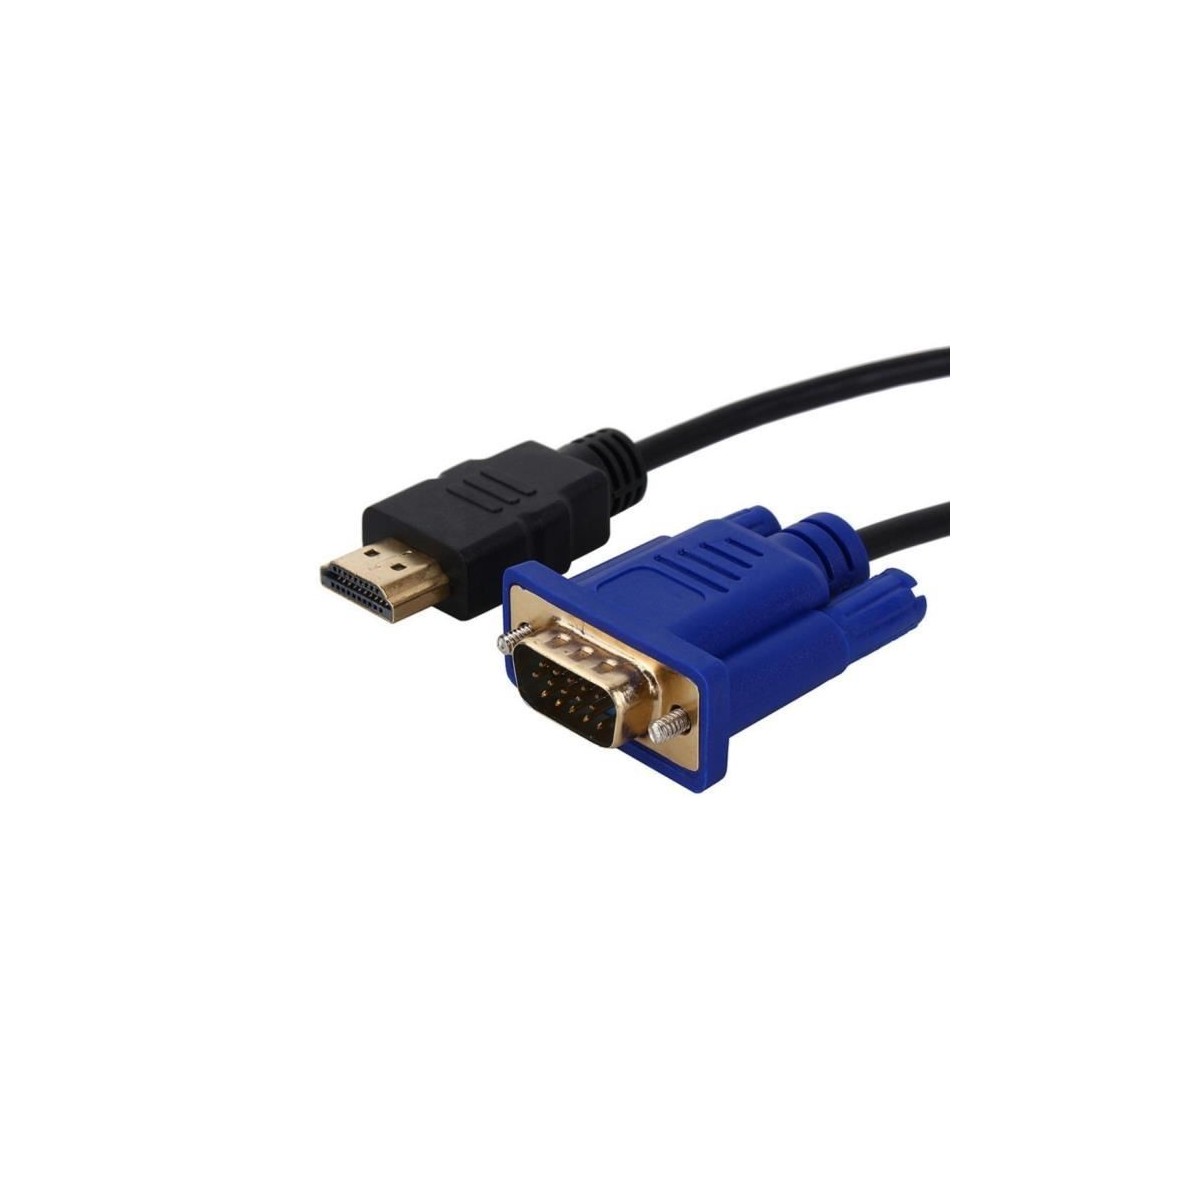 Câble HDMI-VGA 1.8m Noir